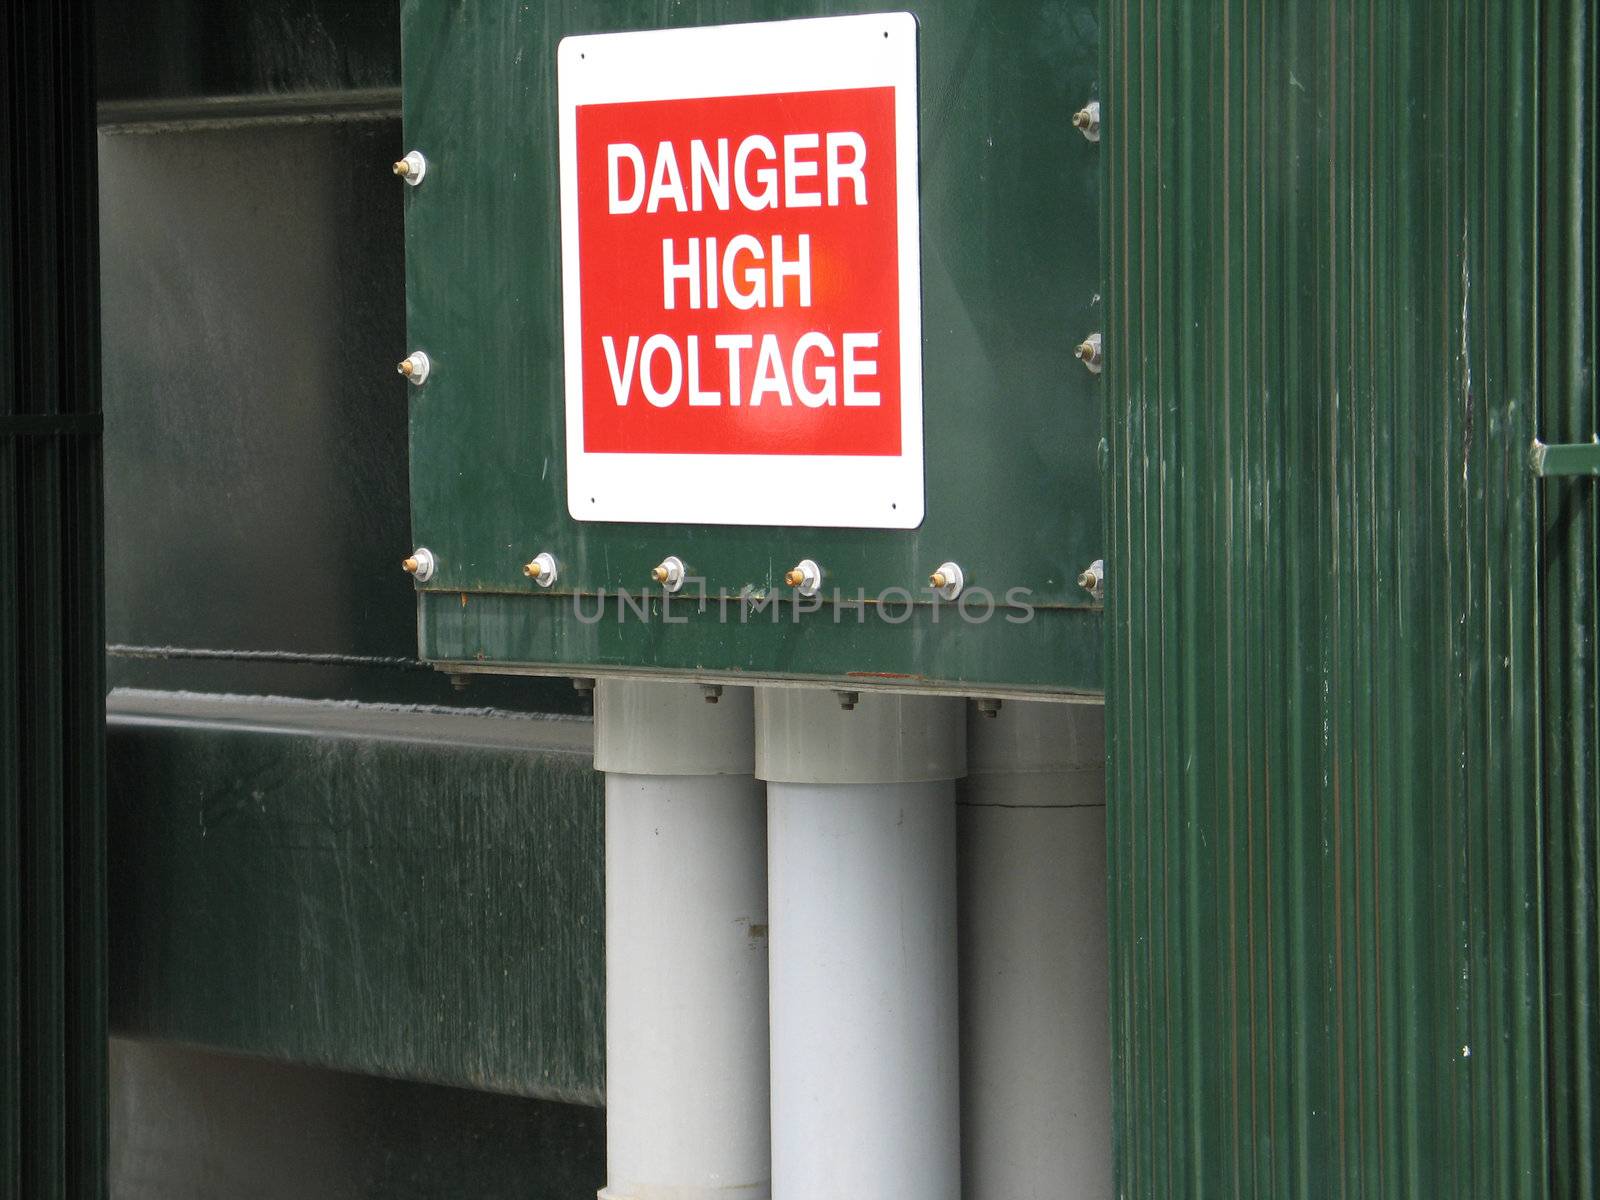 high voltage sign